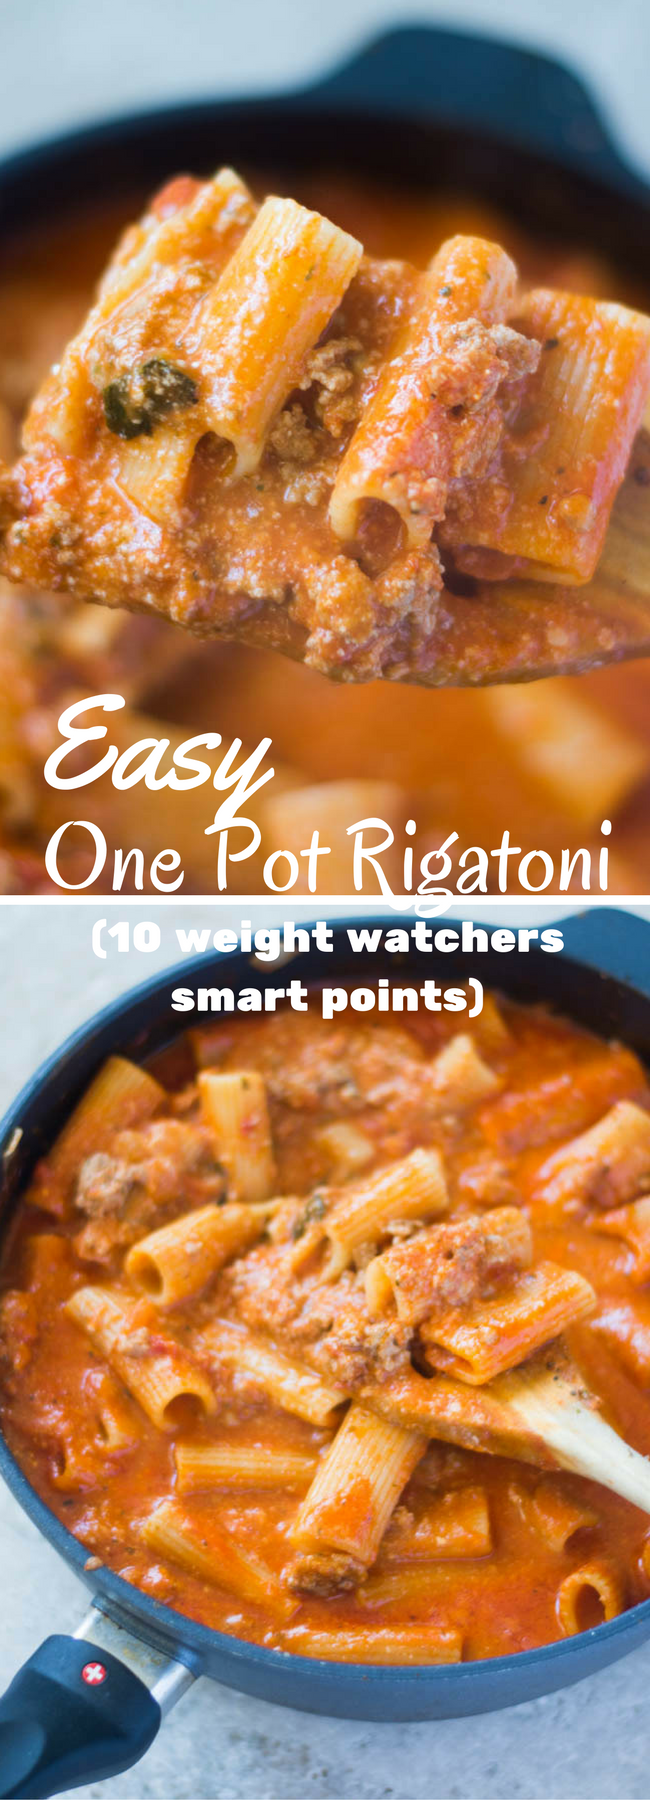 Easy Rigatoni / Rigatoni Recipe / Saucy Rigatoni / Low Fat Pasta / Weight Watchers / Weight Watchers Pasta / Points Plus recipes / Weight Watchers Main Dish / Weight Watchers Dinner Low Fat Rigatoni / Red Sauce / Ground Turkey Pasta / 